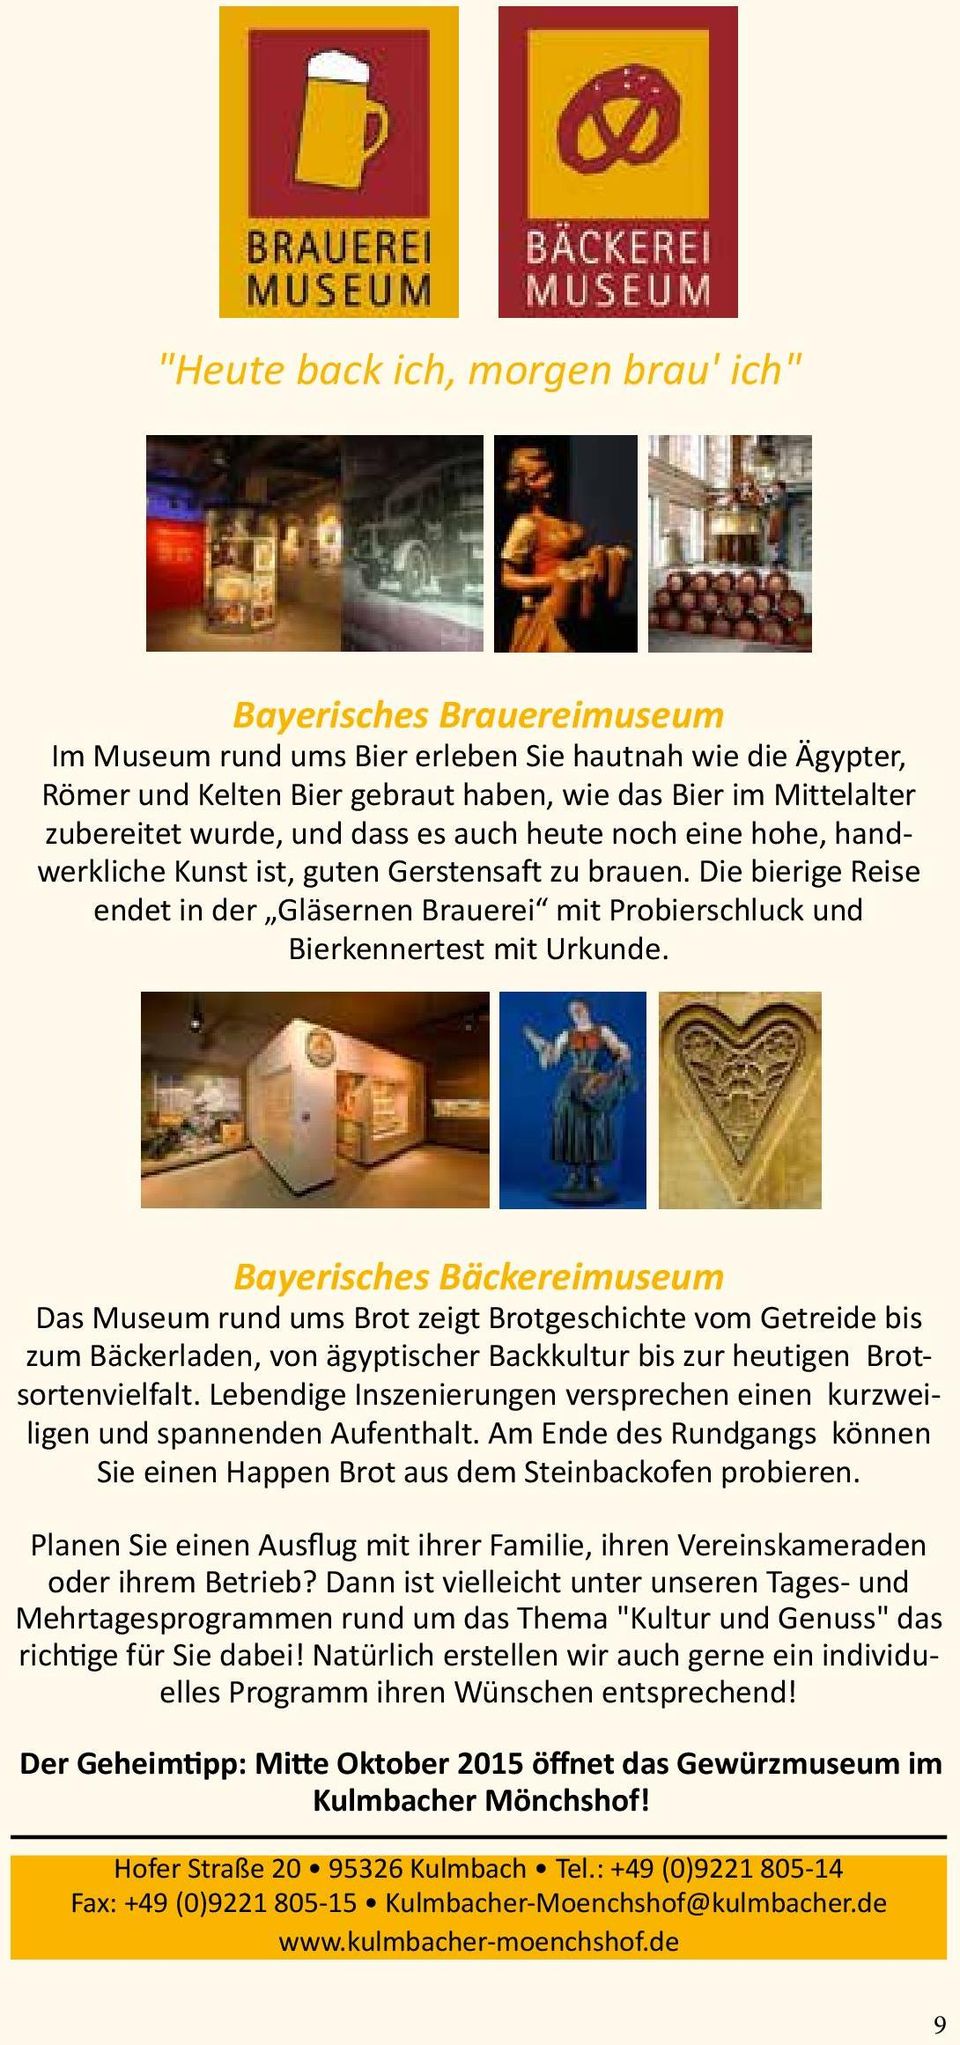 Bayerisches Bäckereimuseum Das Museum rund ums Brot zeigt Brotgeschichte vom Getreide bis zum Bäckerladen, von ägyptischer Backkultur bis zur heutigen Brotsortenvielfalt.